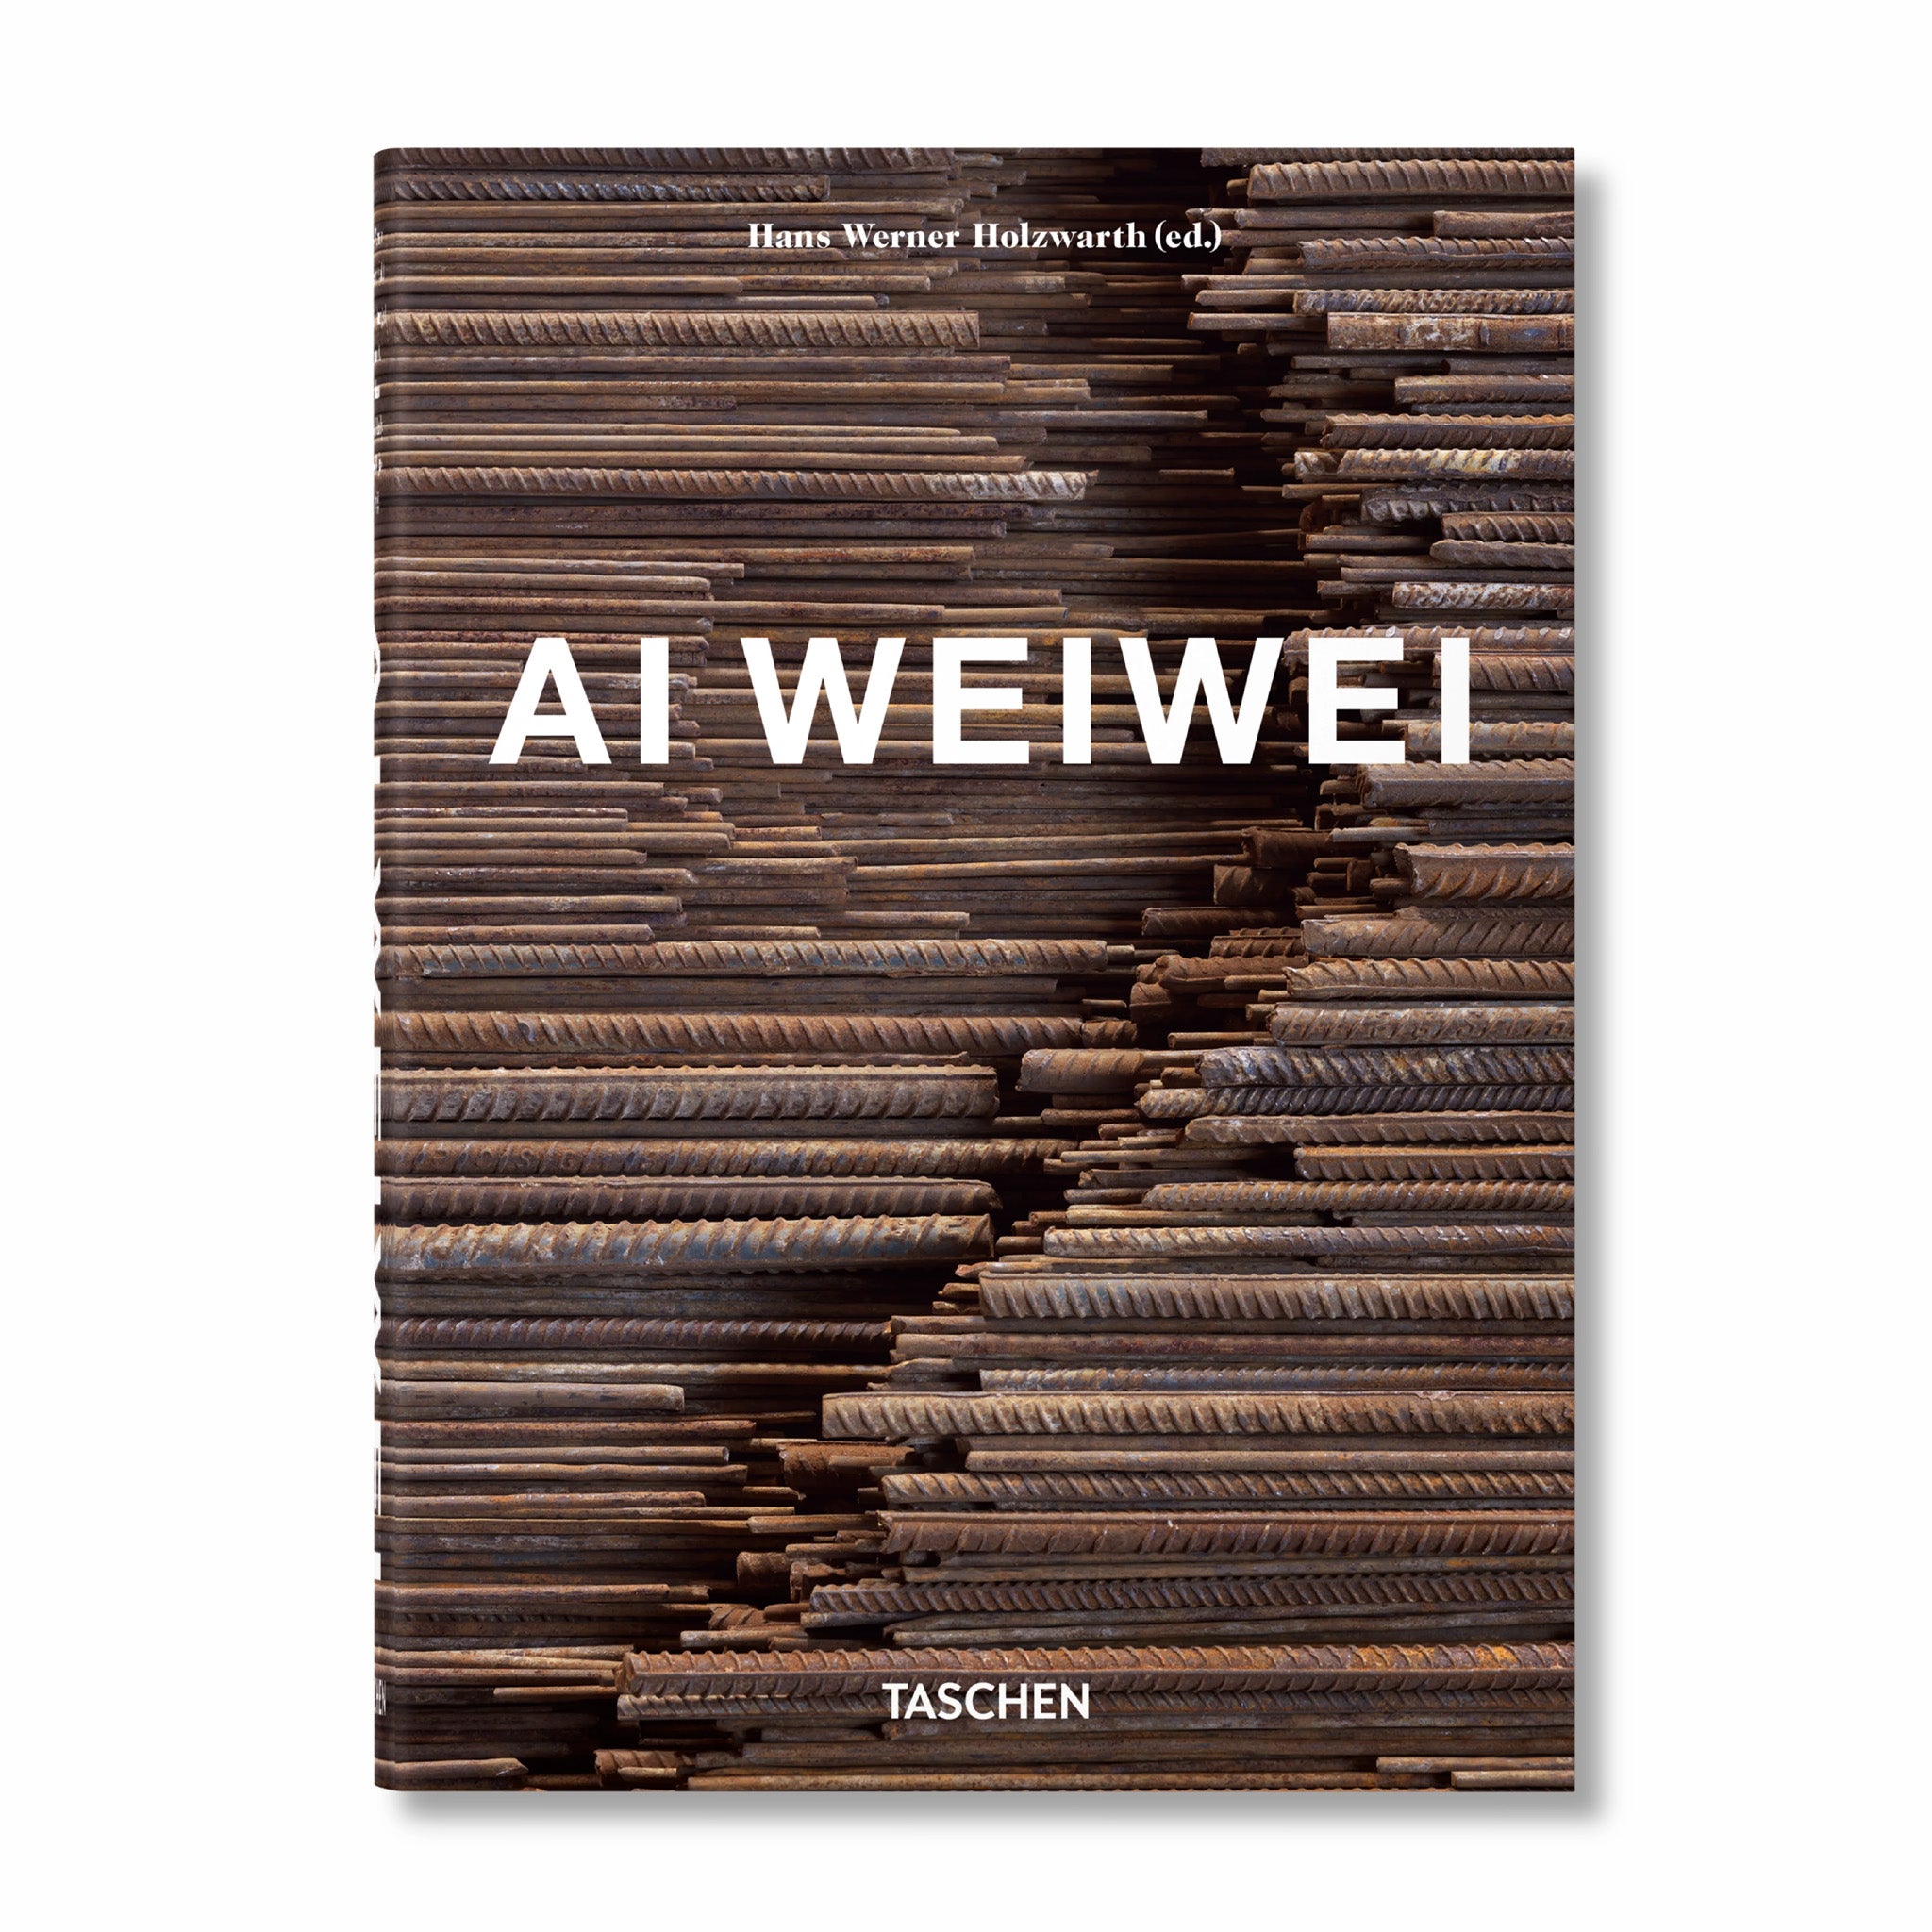 Taschen, Taschen Ai Weiwei 40a edizione (copertina rigida)